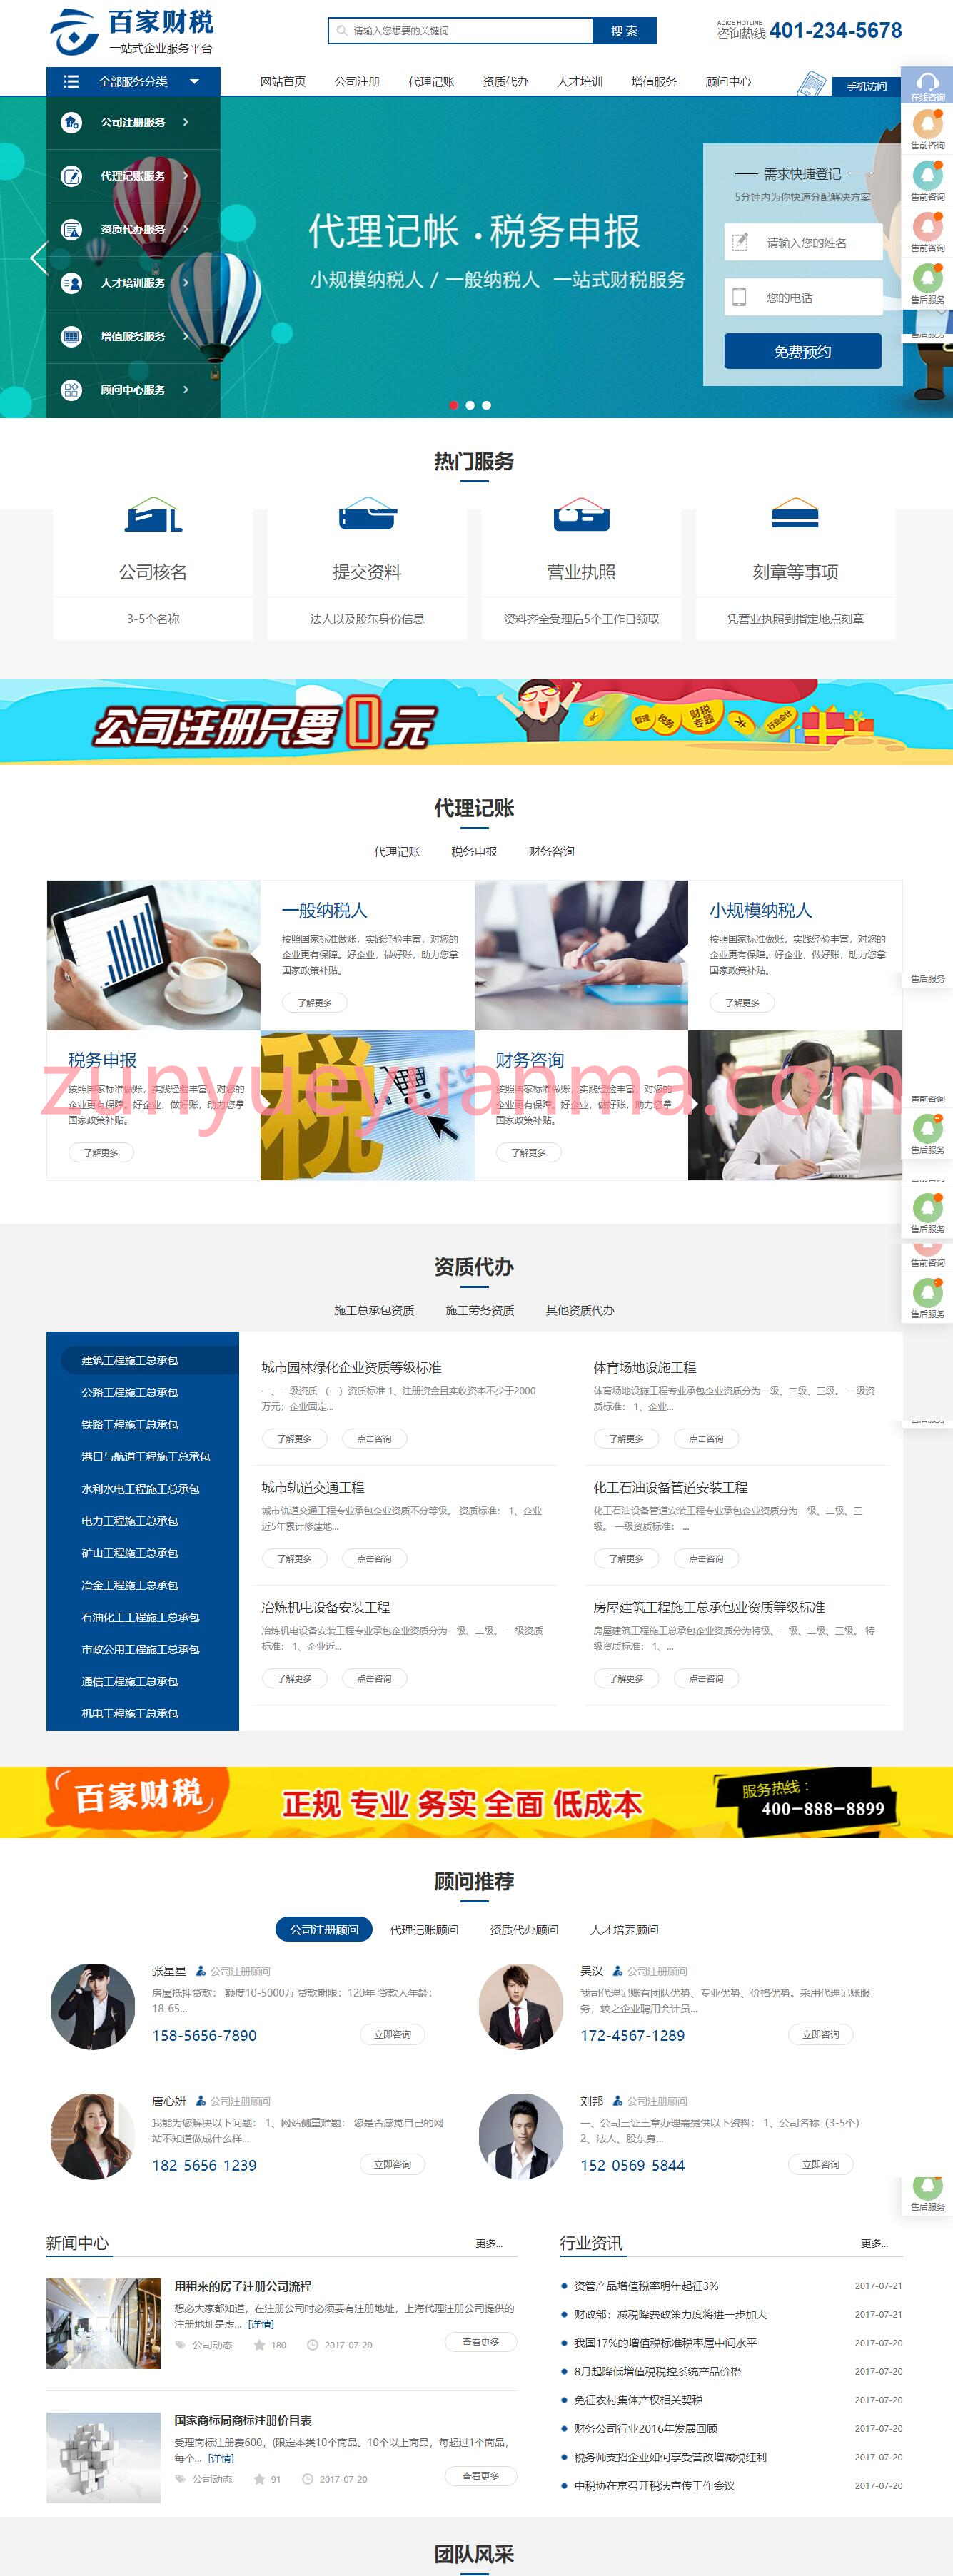 注册记账财税类财务会计公司注册类网站pbootcms模板